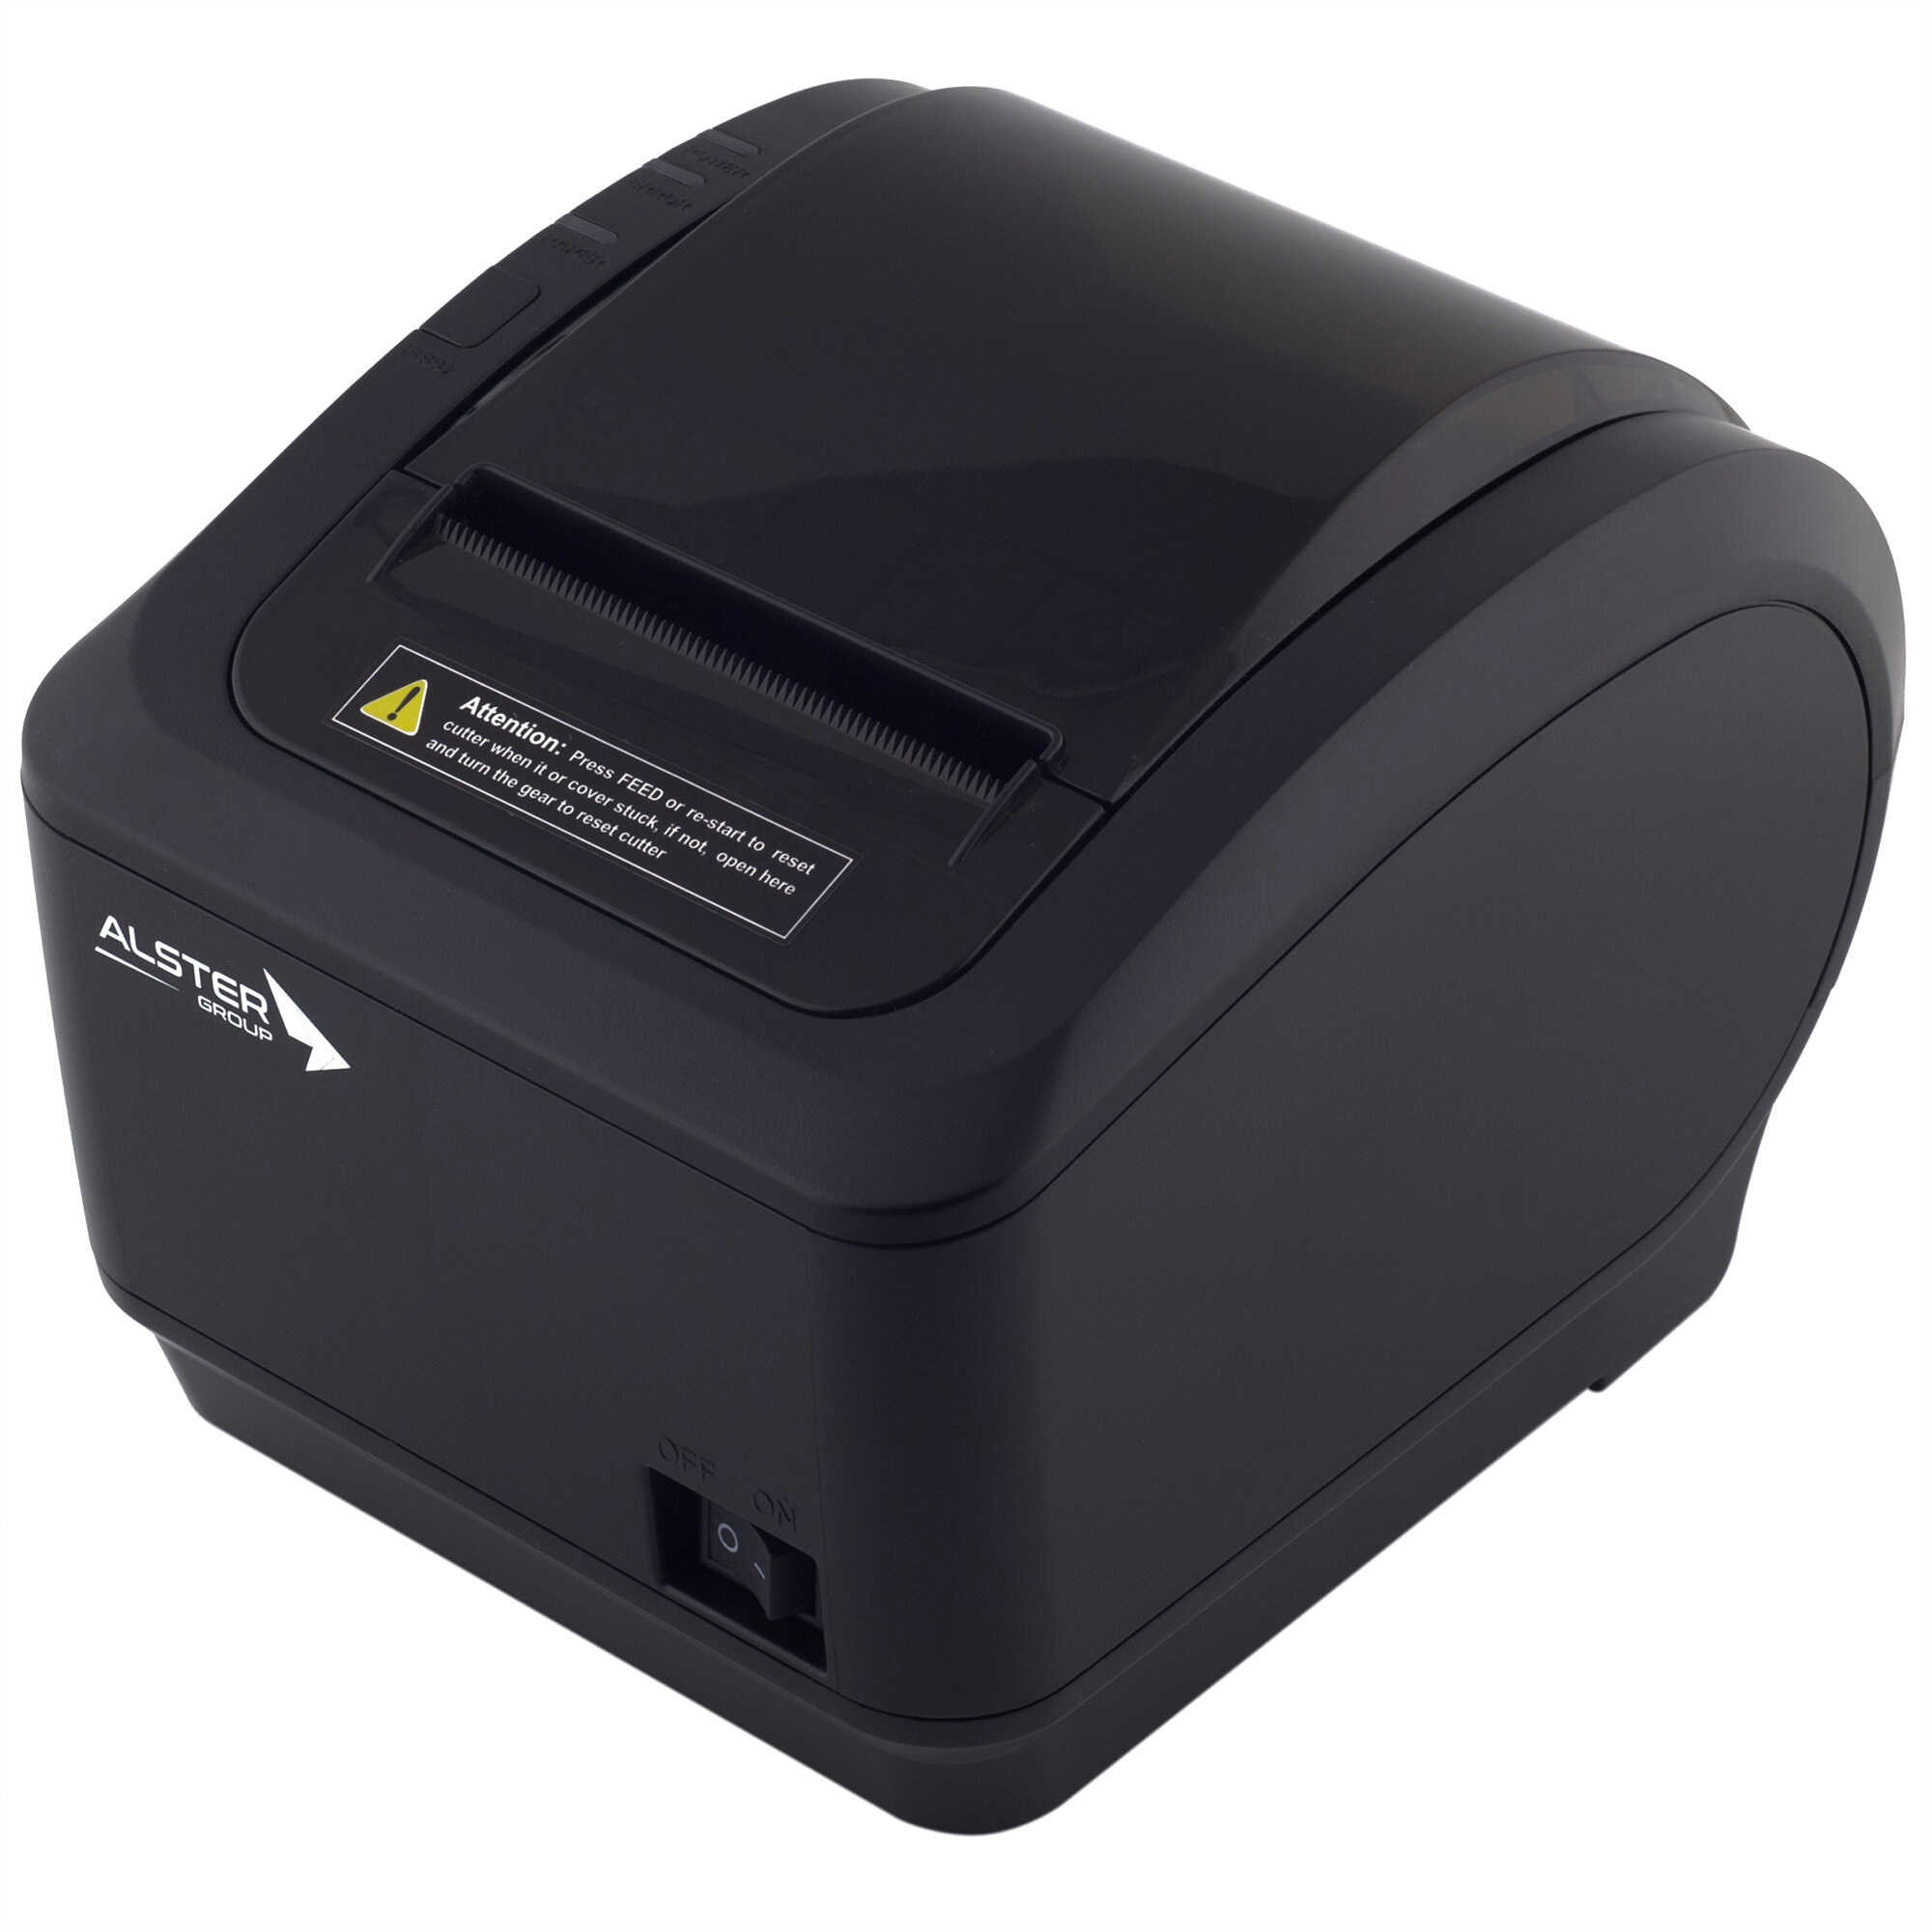 Чековый принтер Alster ALS-260 (203 dpi, черный, термопечать, USB/RS-232/Ethernet)